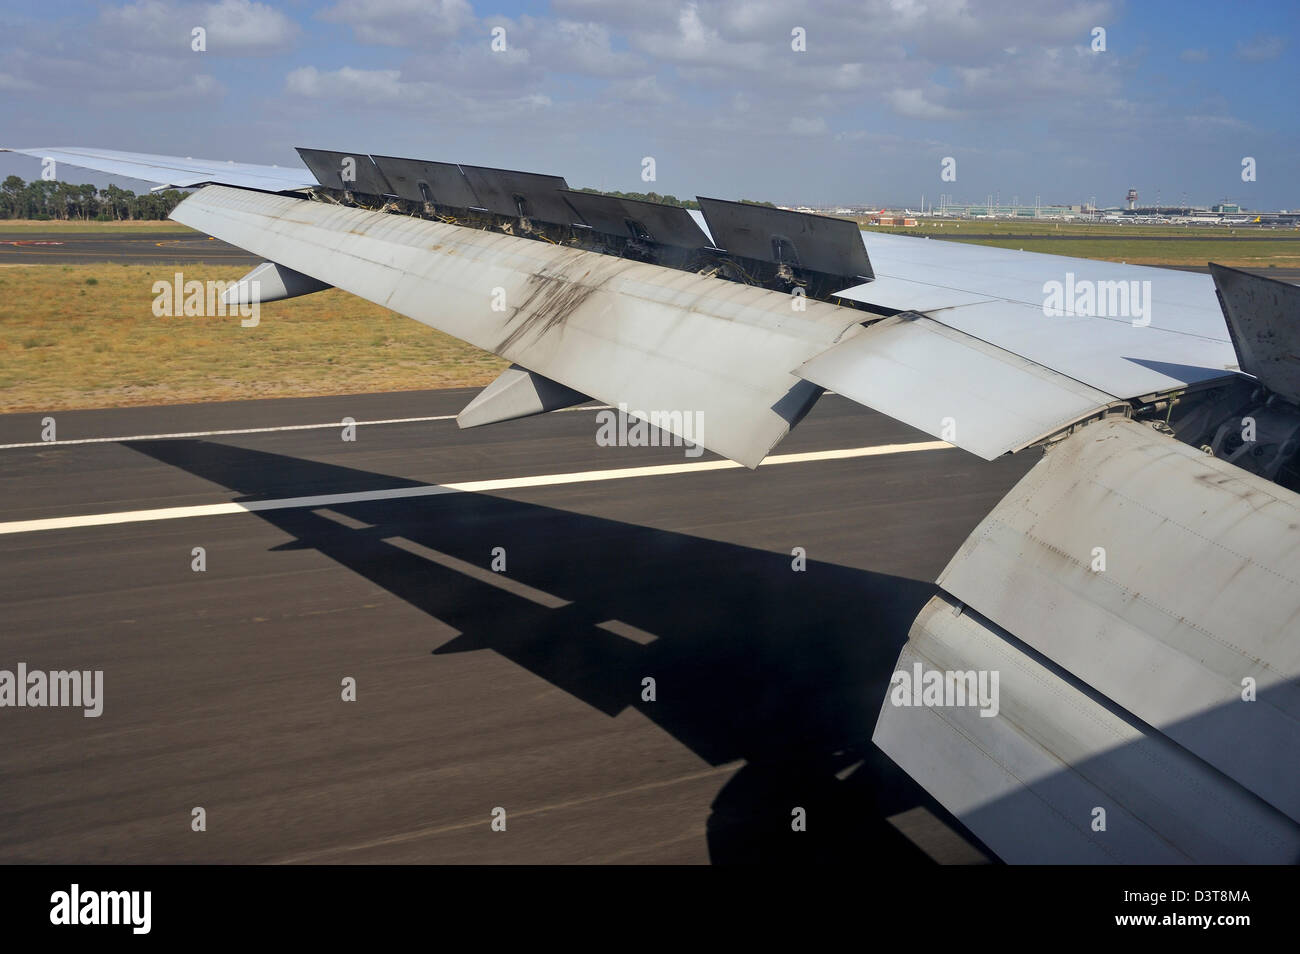 Aile d'un avion à l'atterrissage sur une piste de l'aéroport Banque D'Images